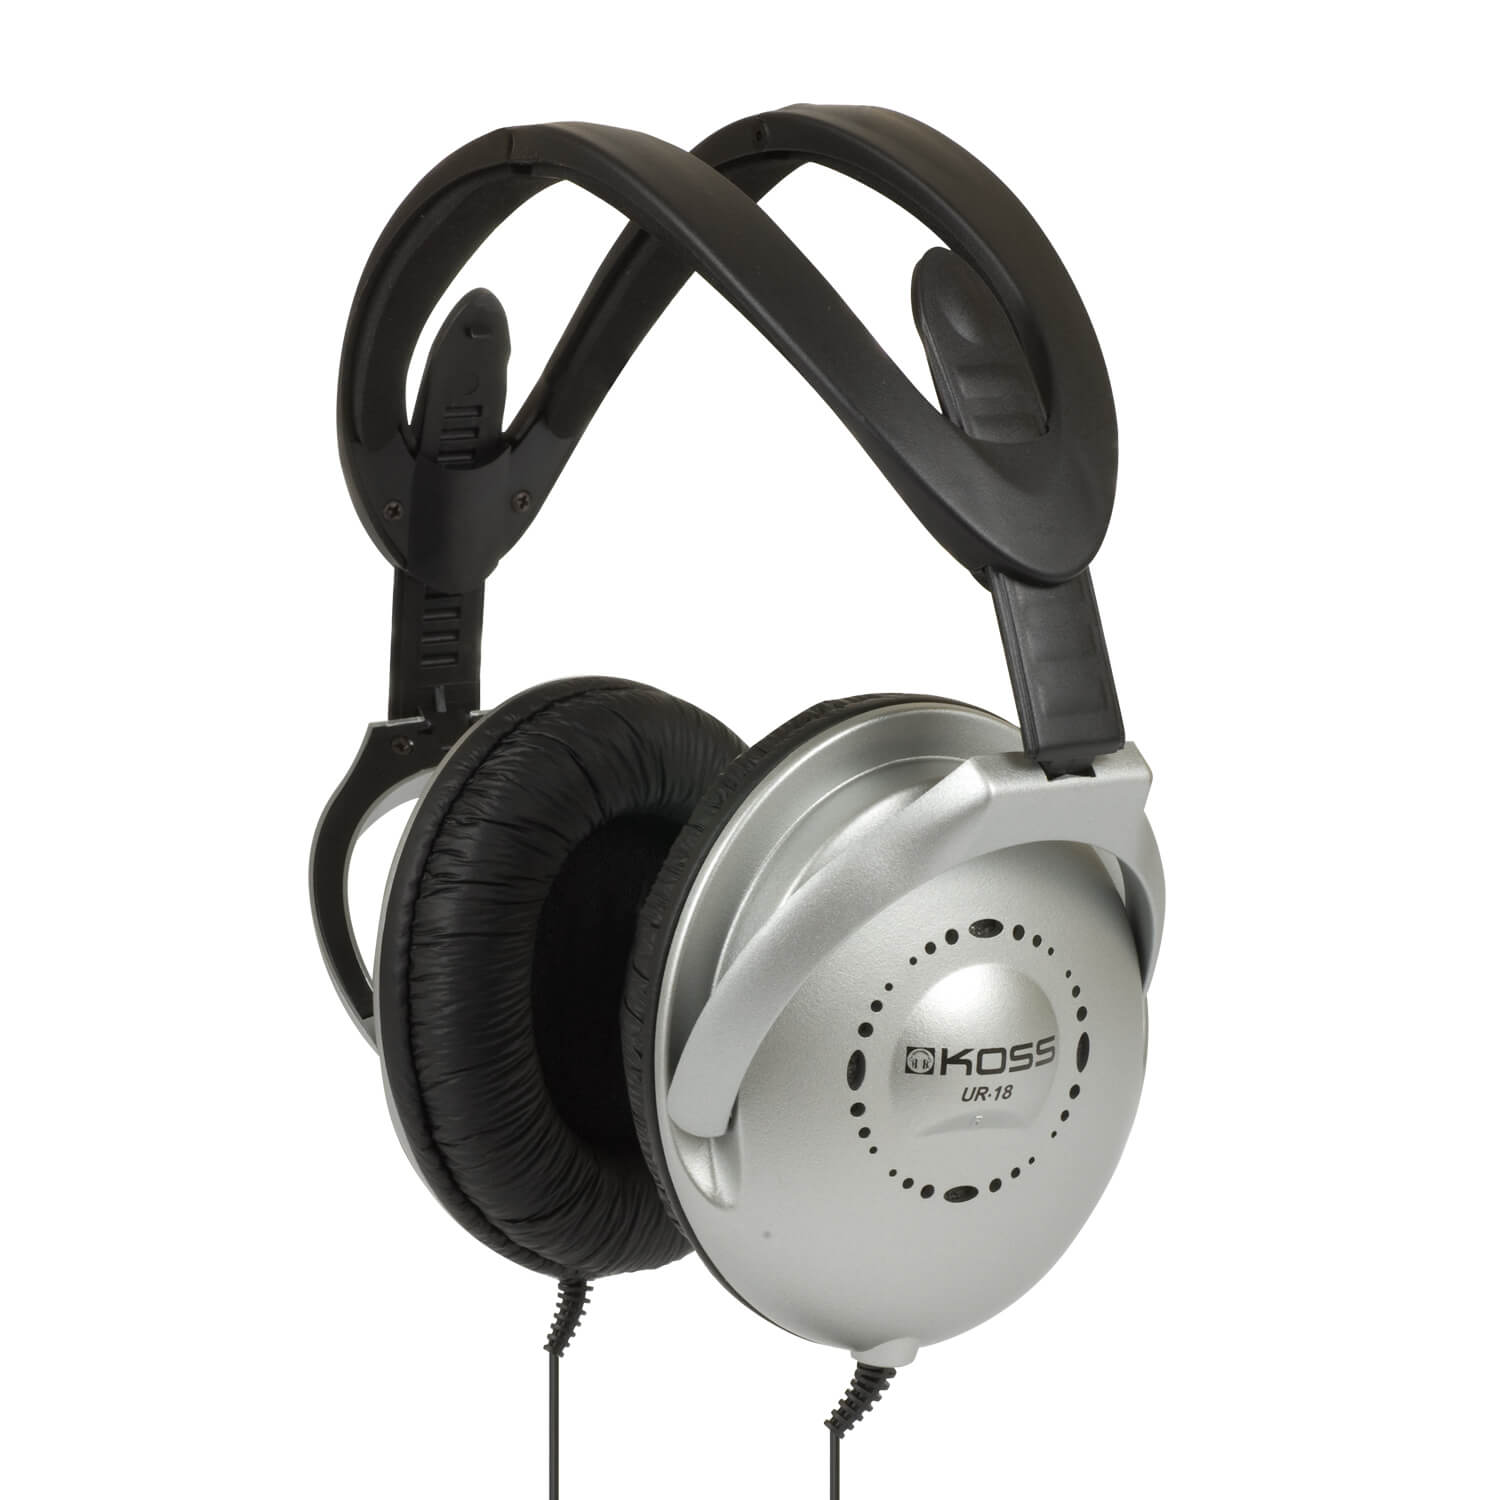 Stereo OverEar Headphone UR-1 8, Black/Silver